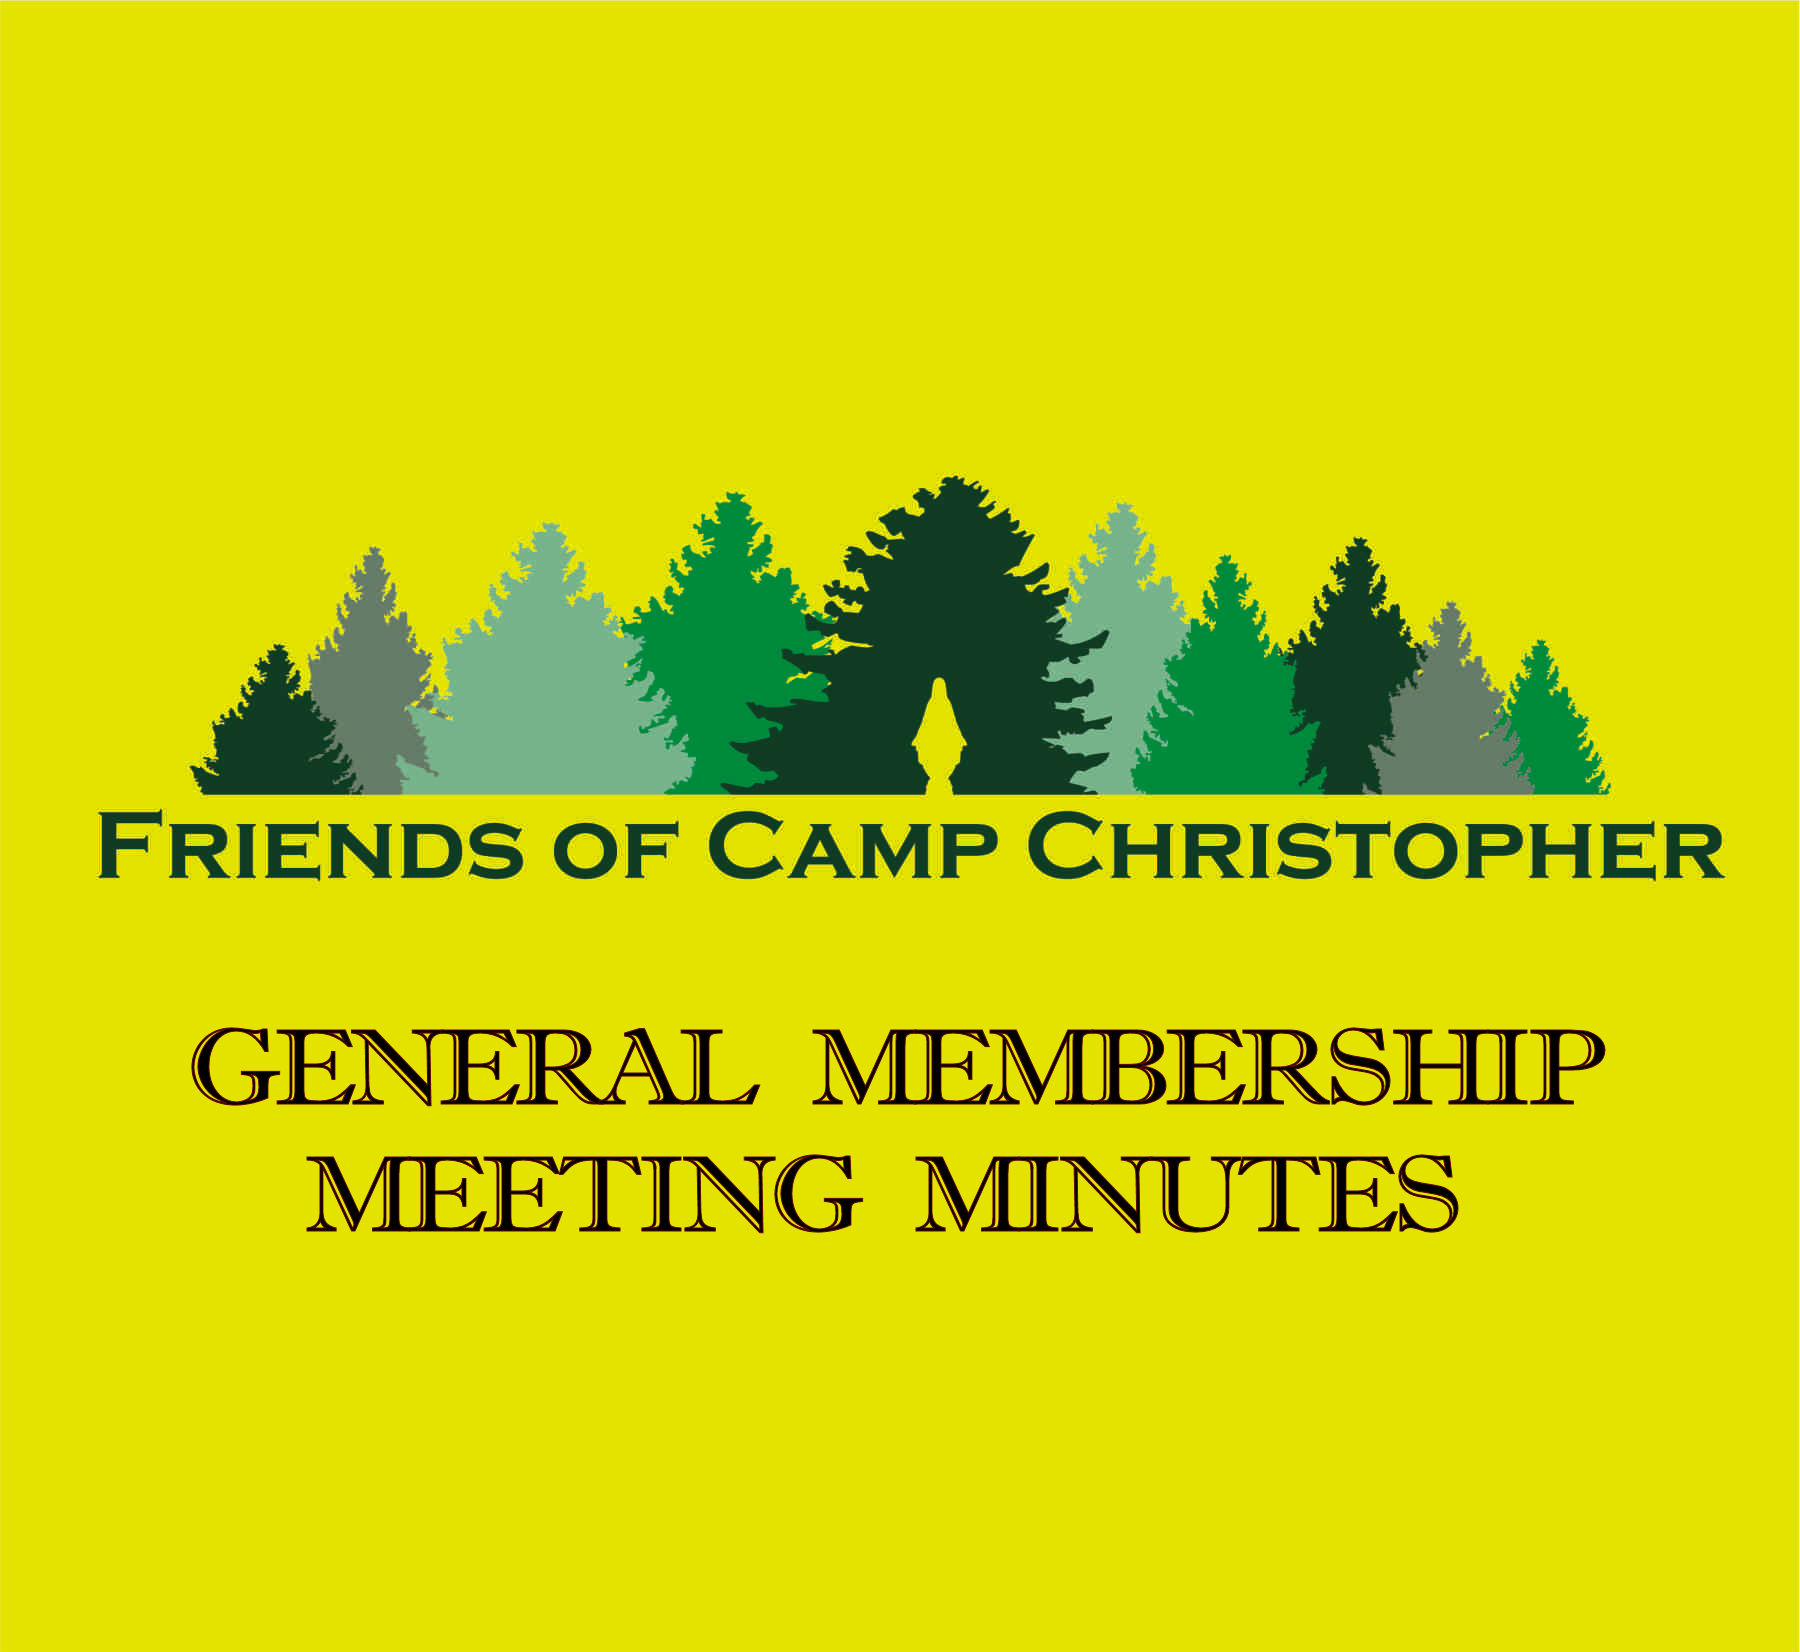 GENERAL MEMBERSHIP MEETING MINUTES